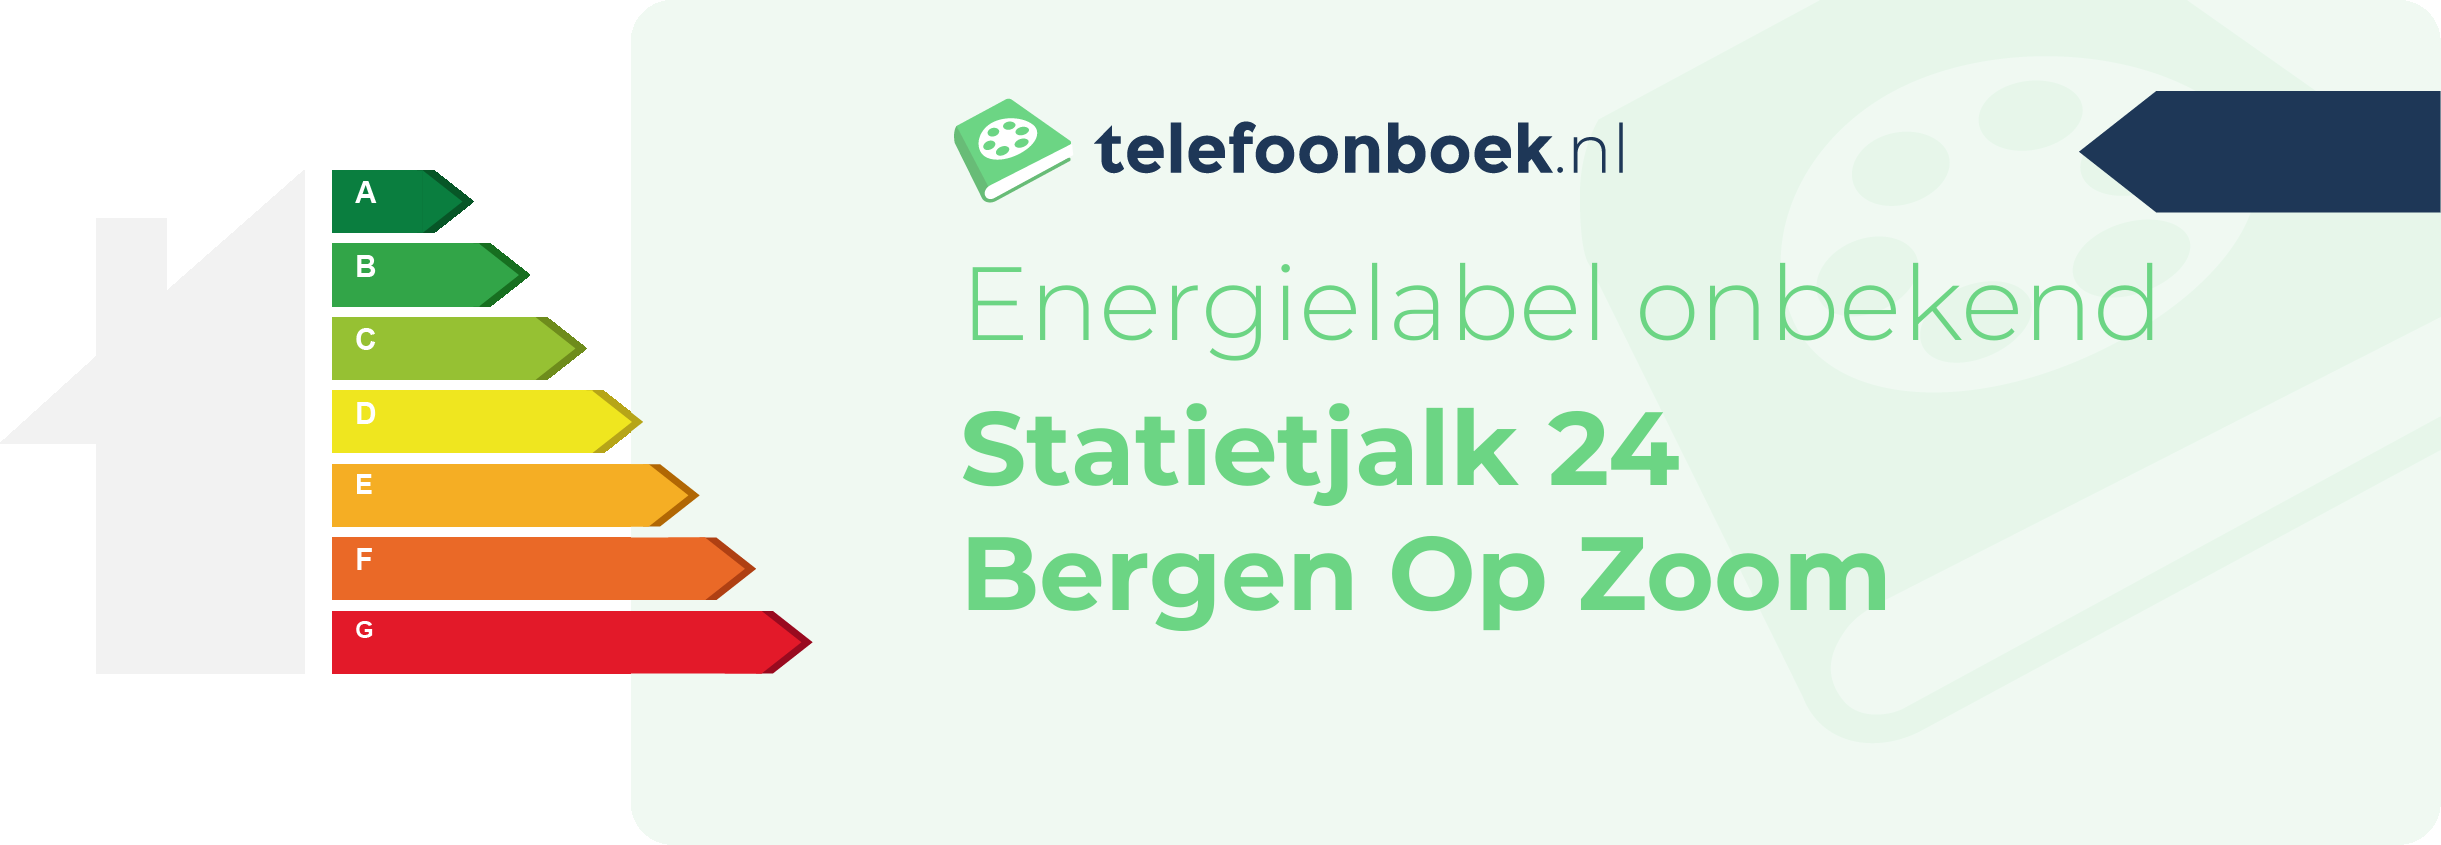 Energielabel Statietjalk 24 Bergen Op Zoom